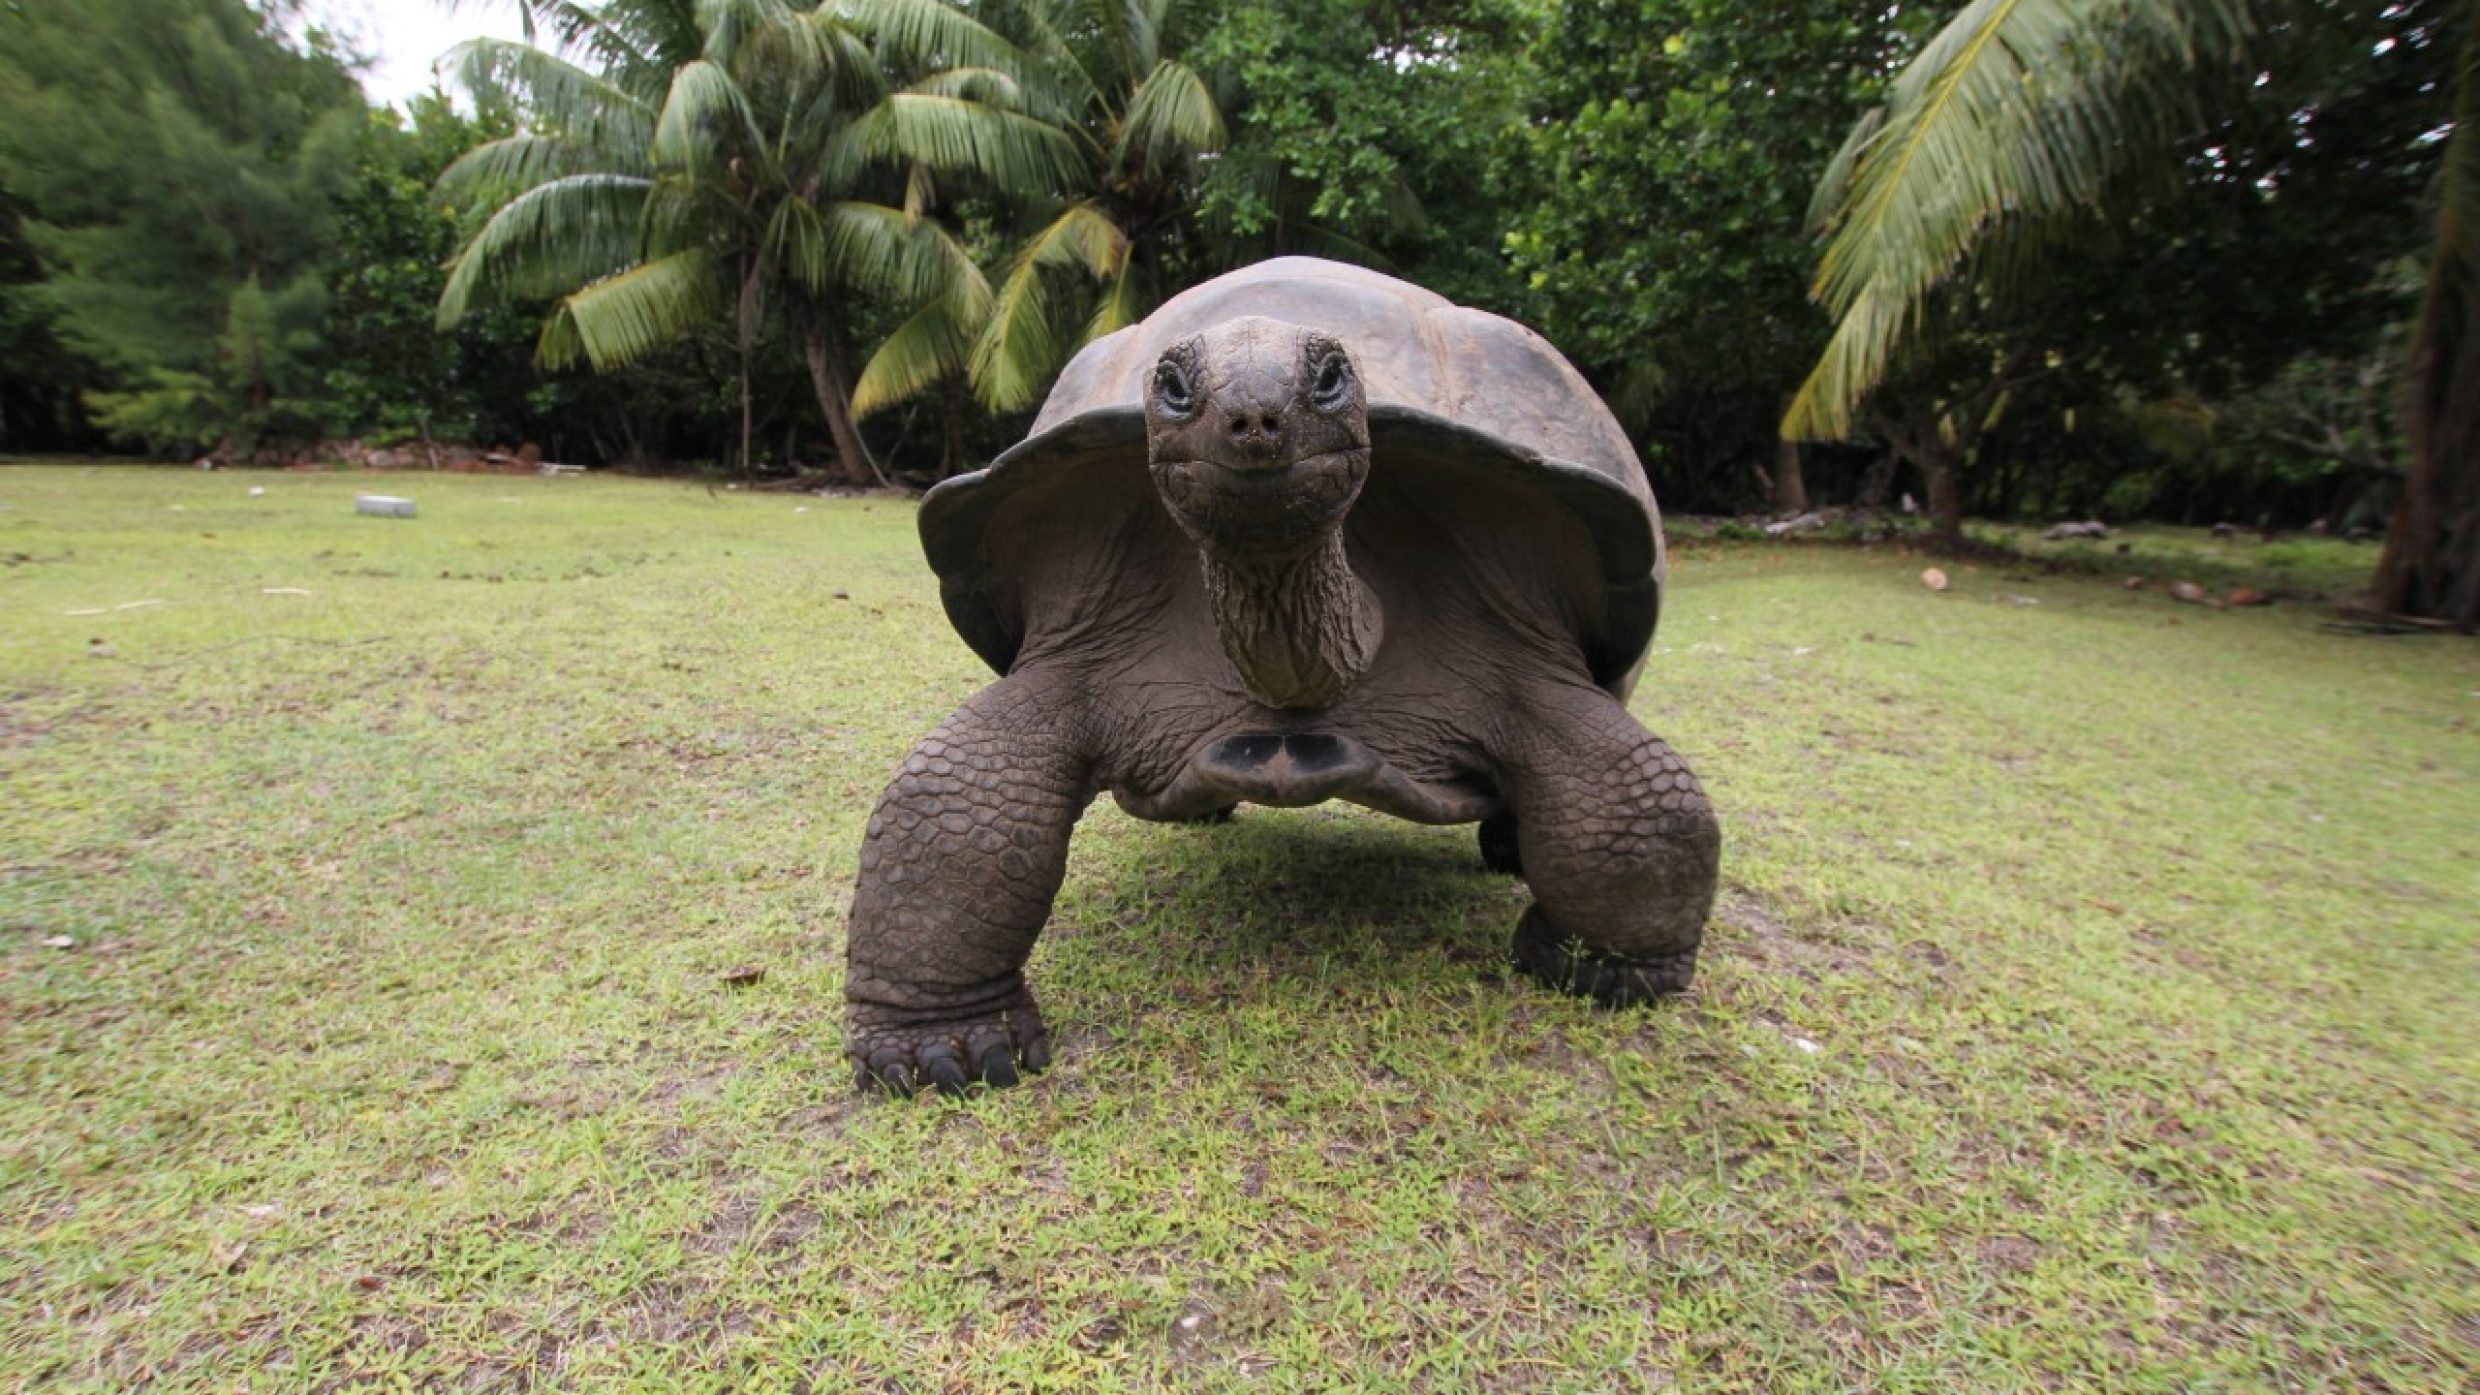 Die ältesten Reptilien haben dank ihres Panzers kaum natürliche Feinde und sind sehr anpassungsfähig, wodurch sie sogar die Eiszeit überlebt haben. Eine Aldabra-Riesenschildkröte wurde stolze 256 Jahre alt.